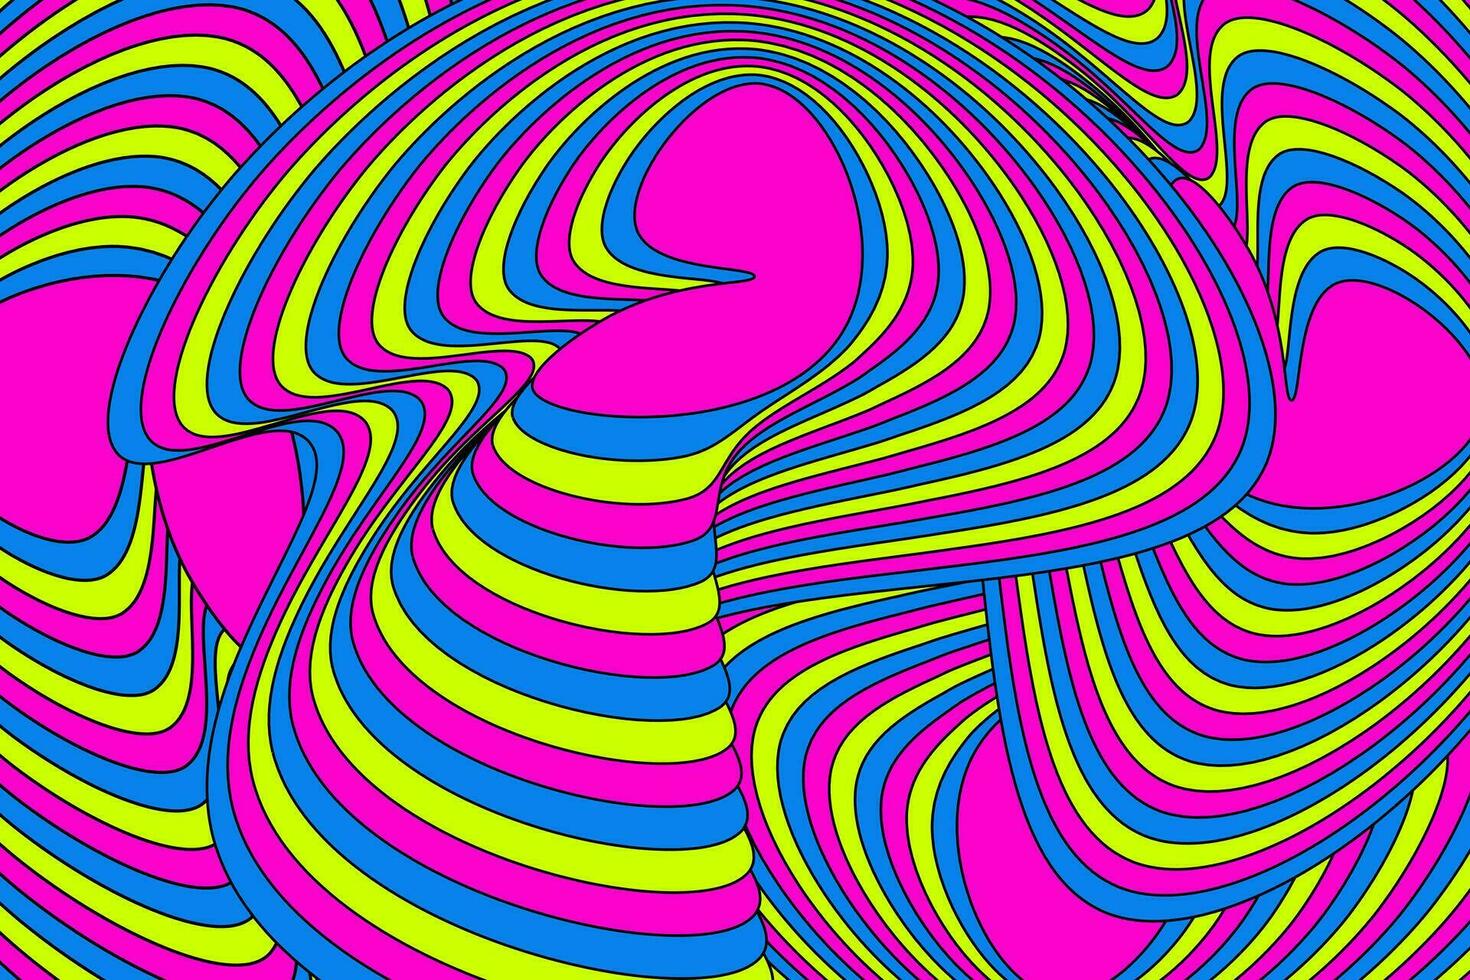 wellig abstrakt groovig Hintergrund. Hippie 70er Jahre retro Regenbogen Farbe. Vektor Illustration